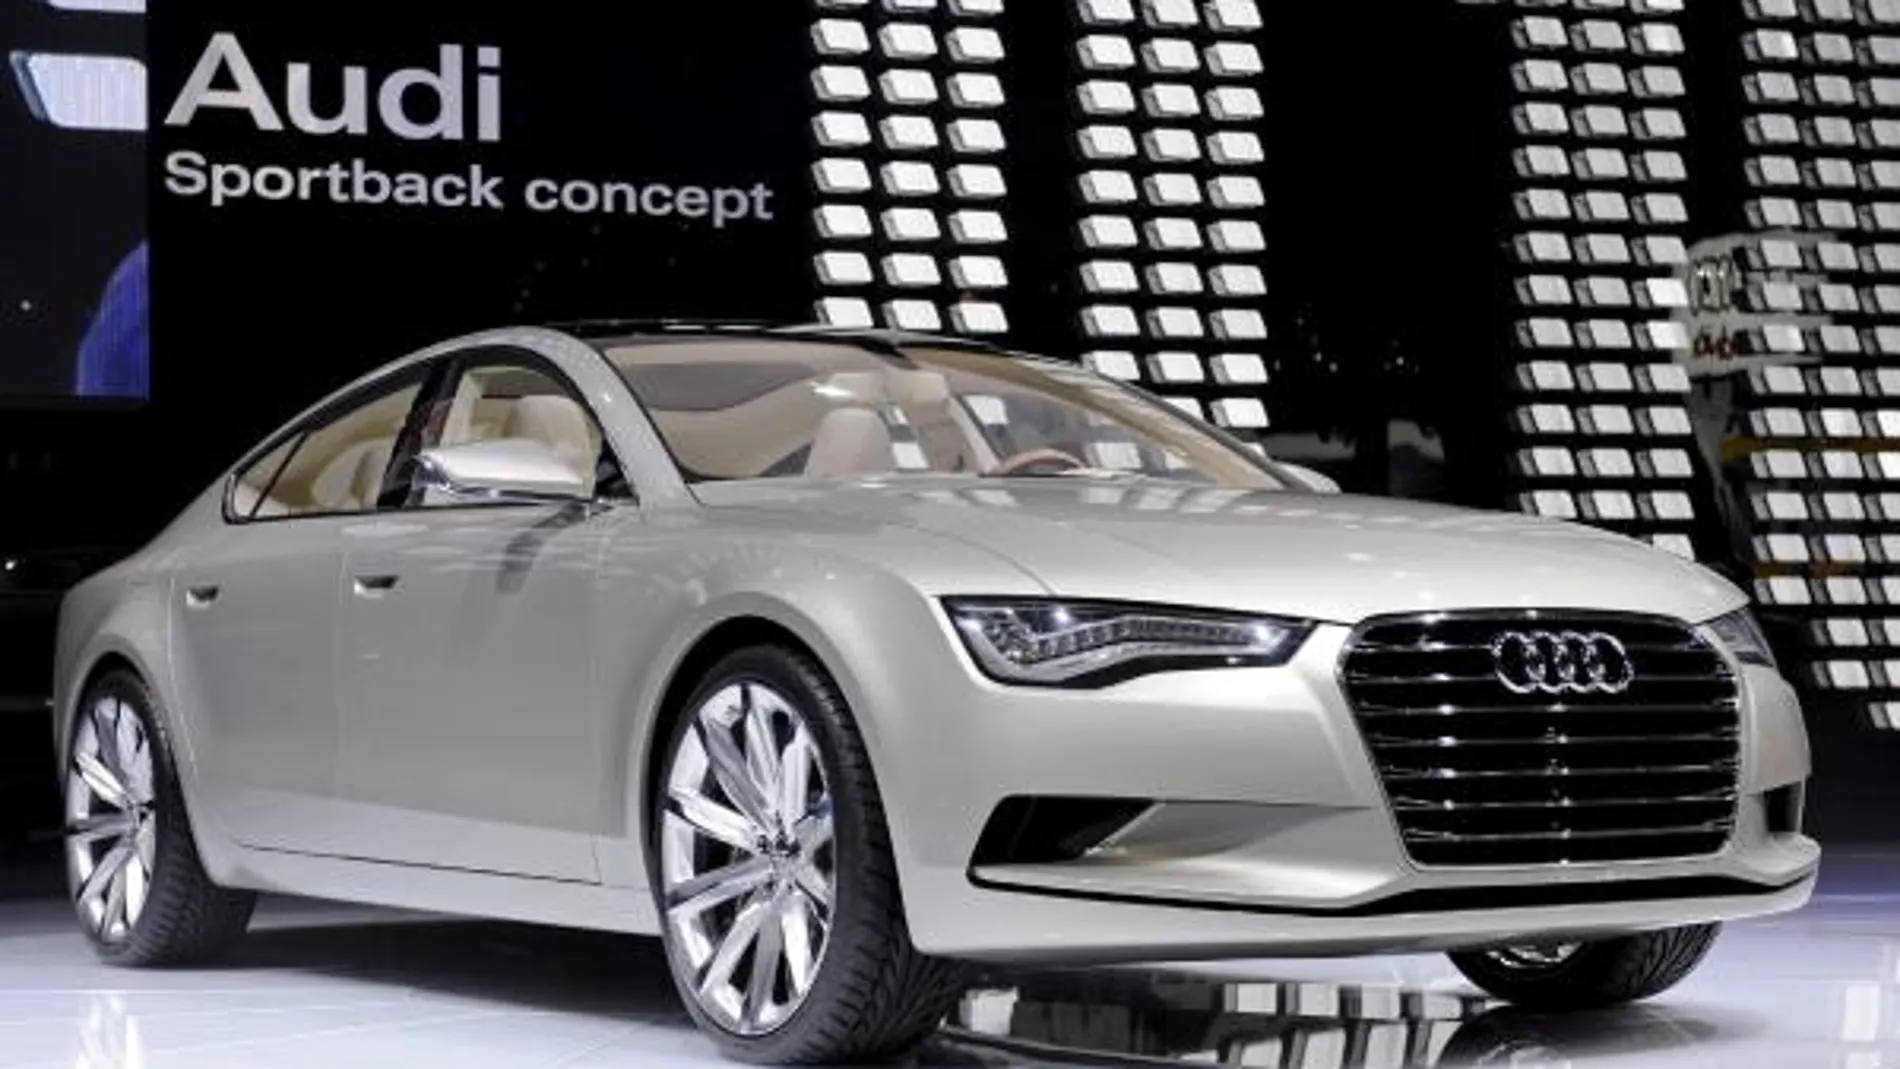 Audi muestra su nuevo coche de concepto Sportback